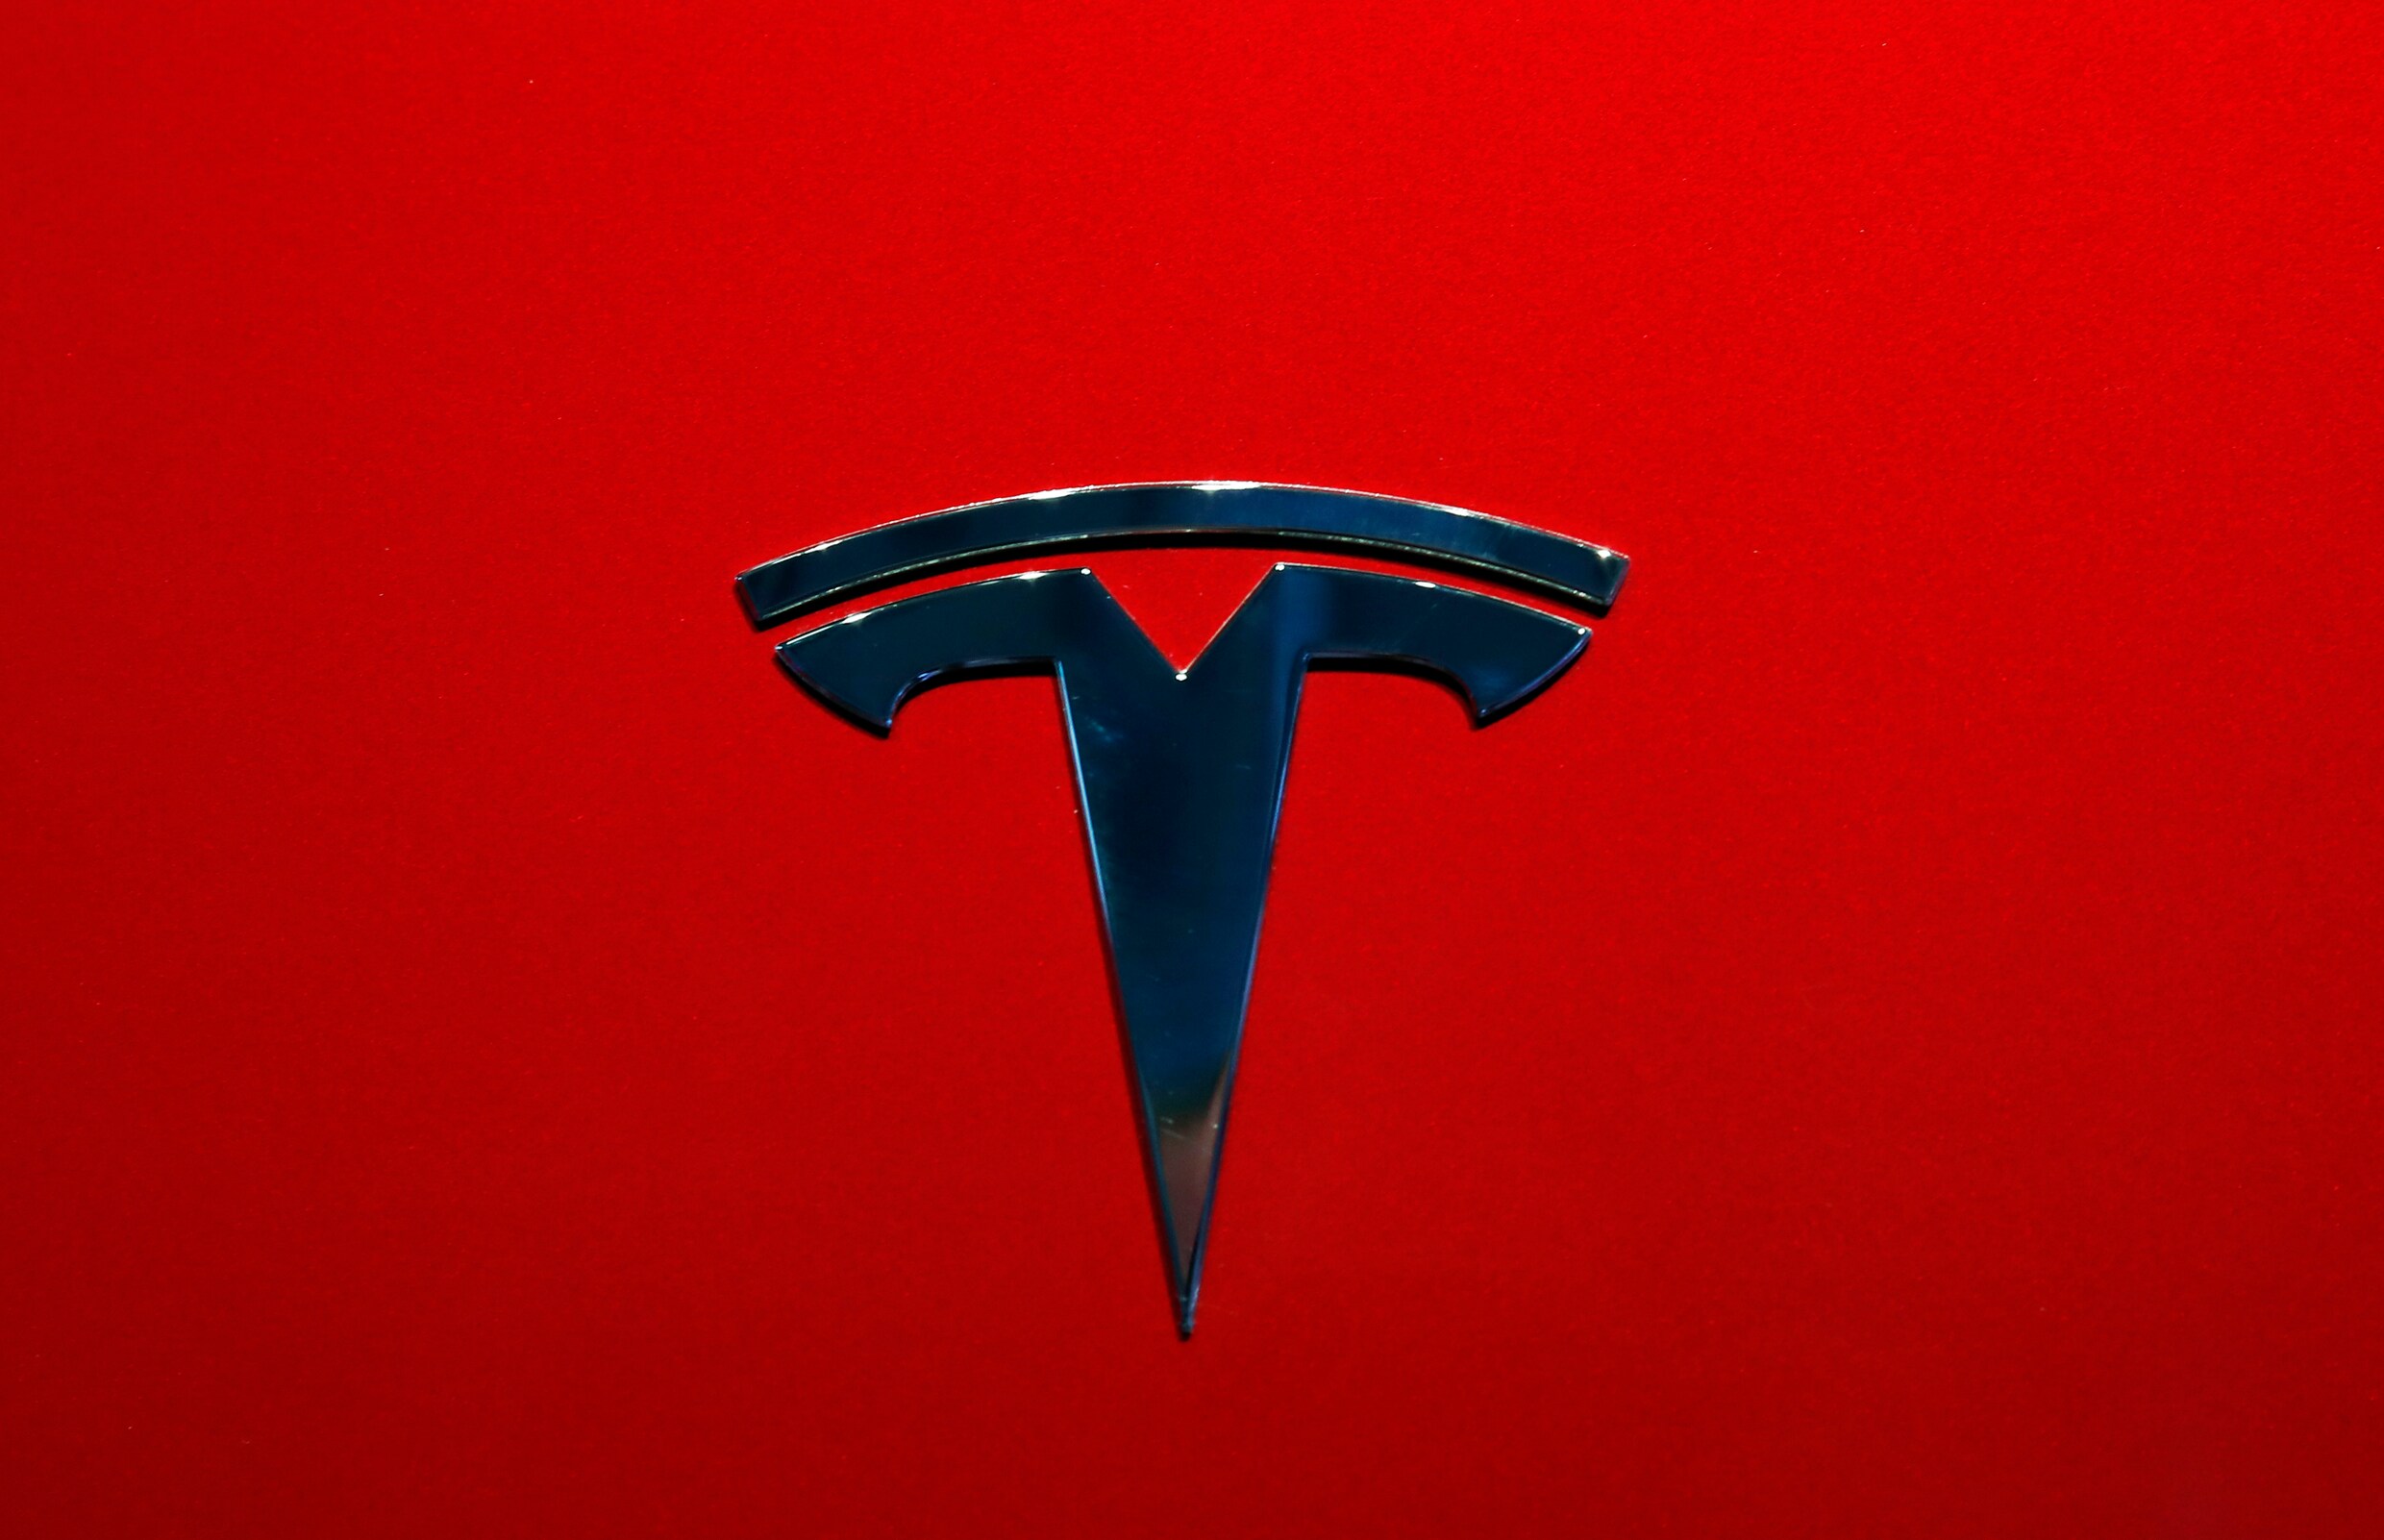 Teslarijder krijgt 70 duizend euro subsidie - Klopt dit wel?